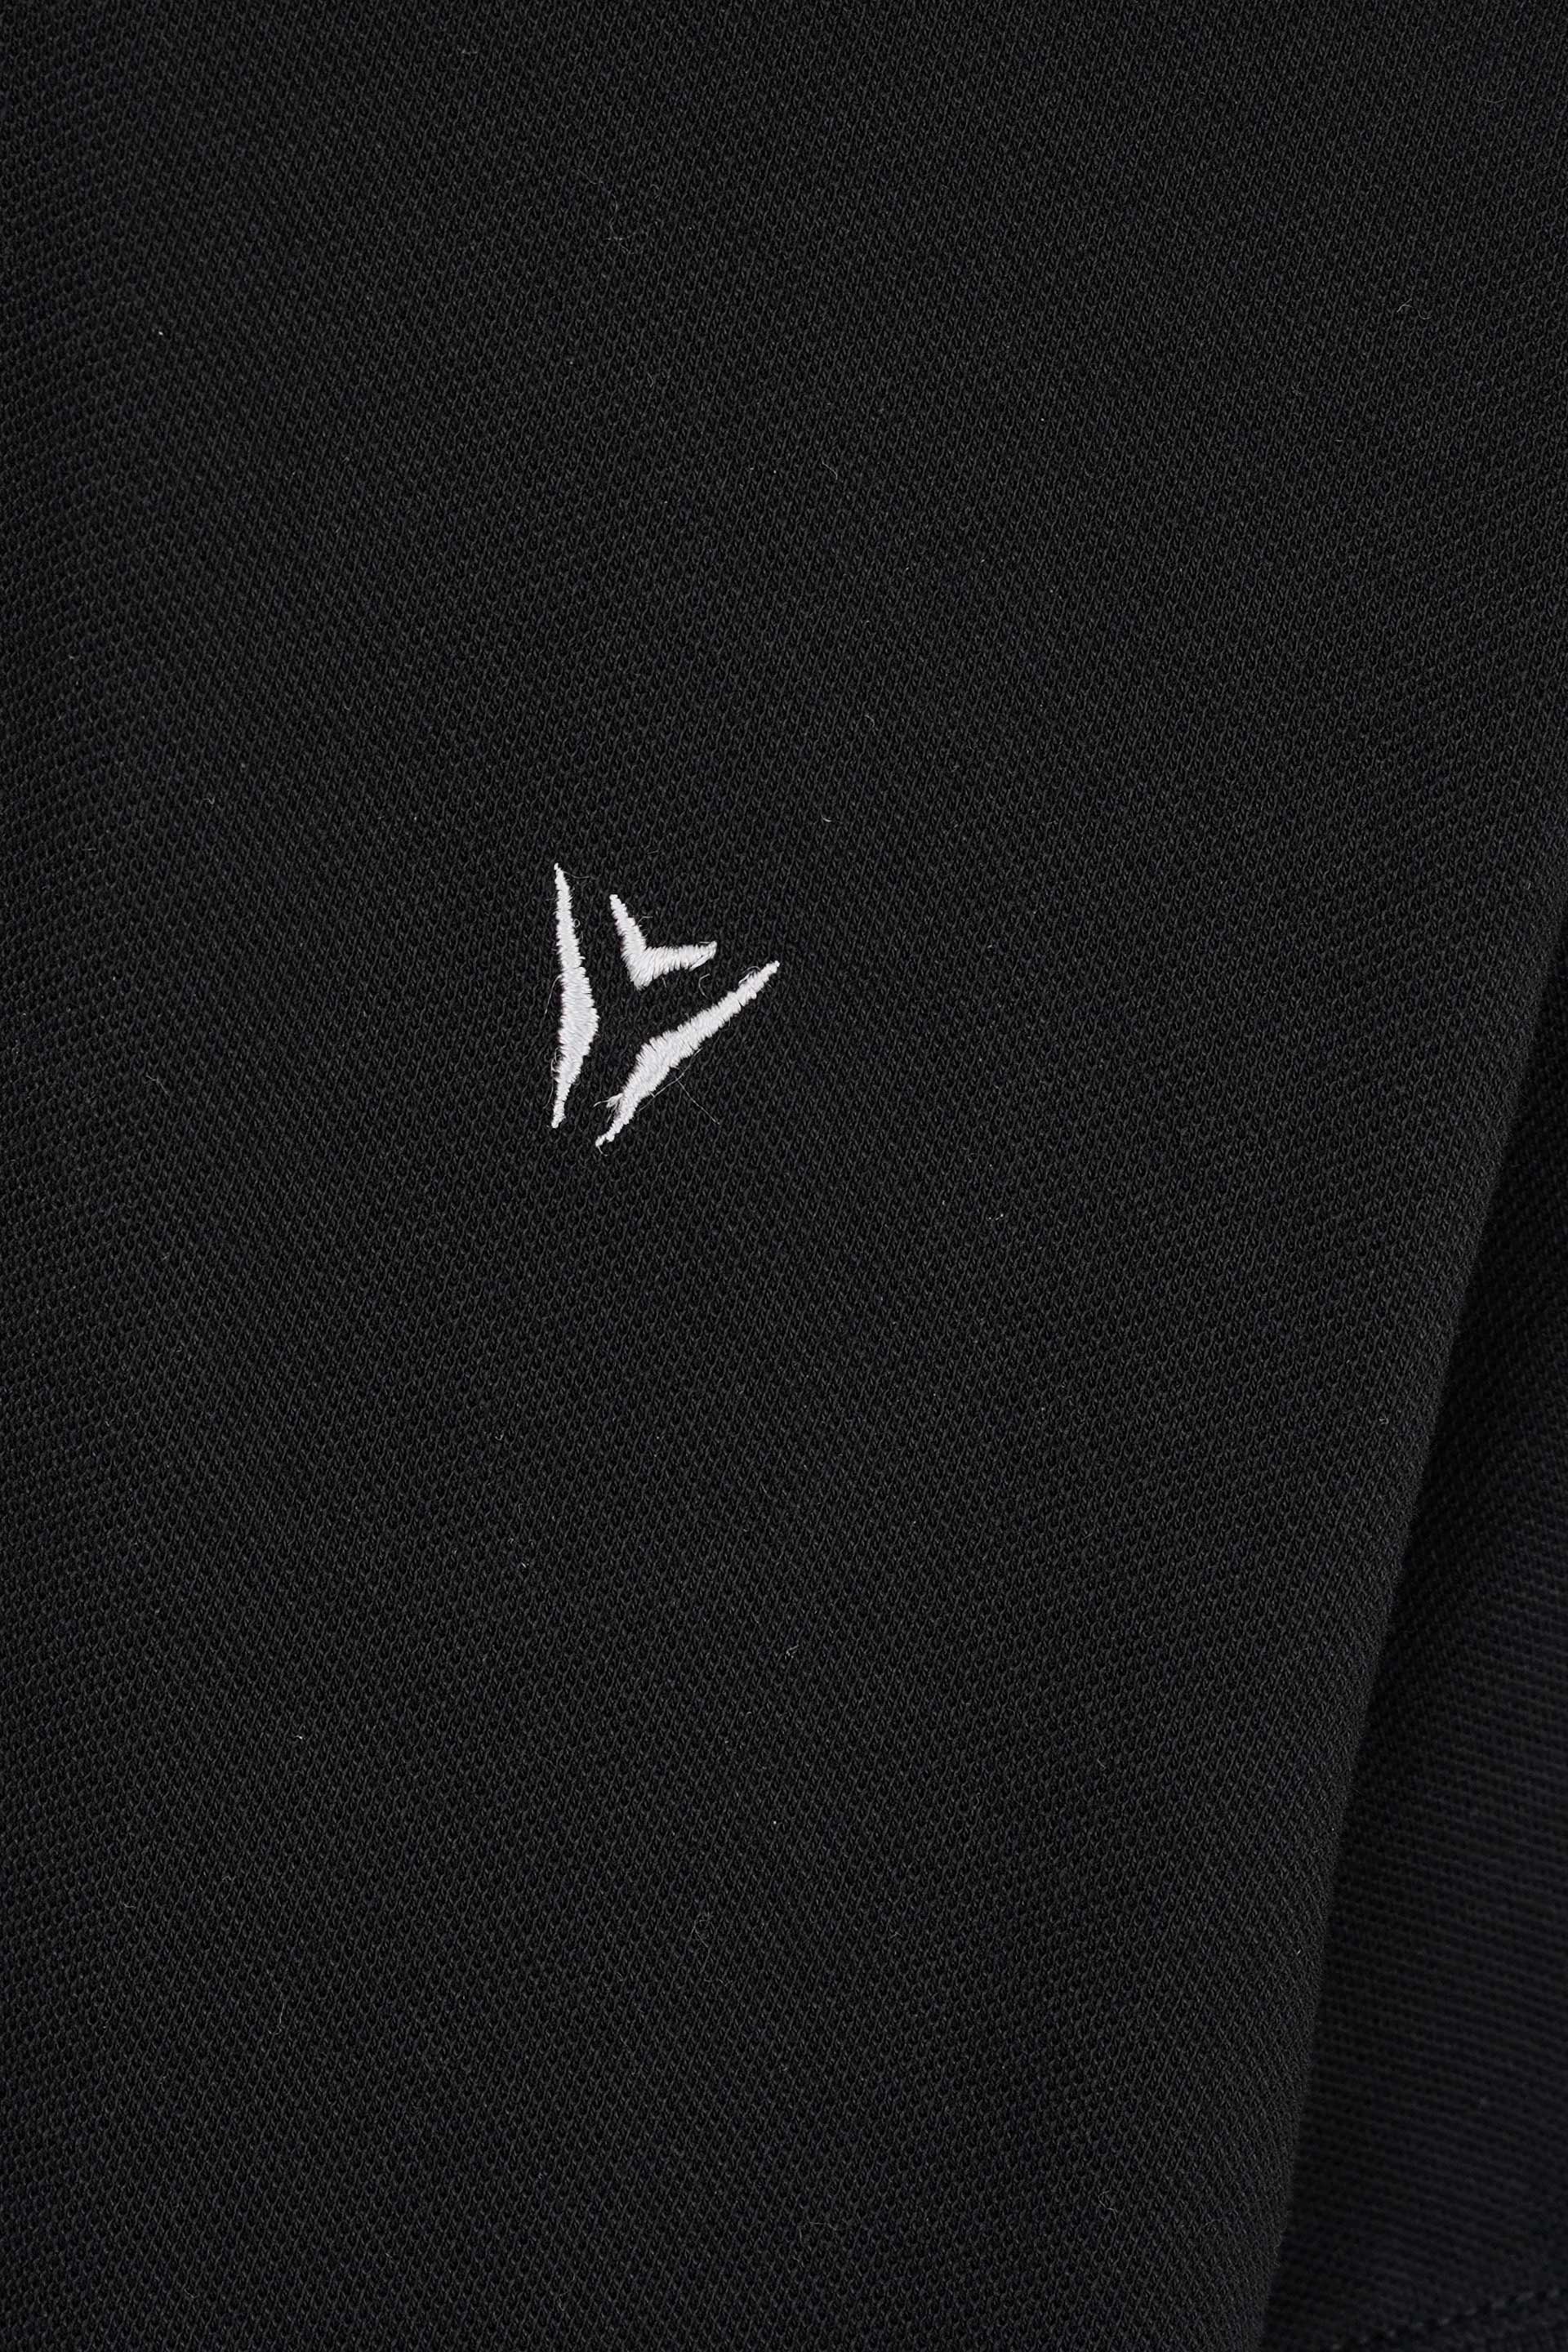 Embroidered Pique Black Polo Shirt 002479